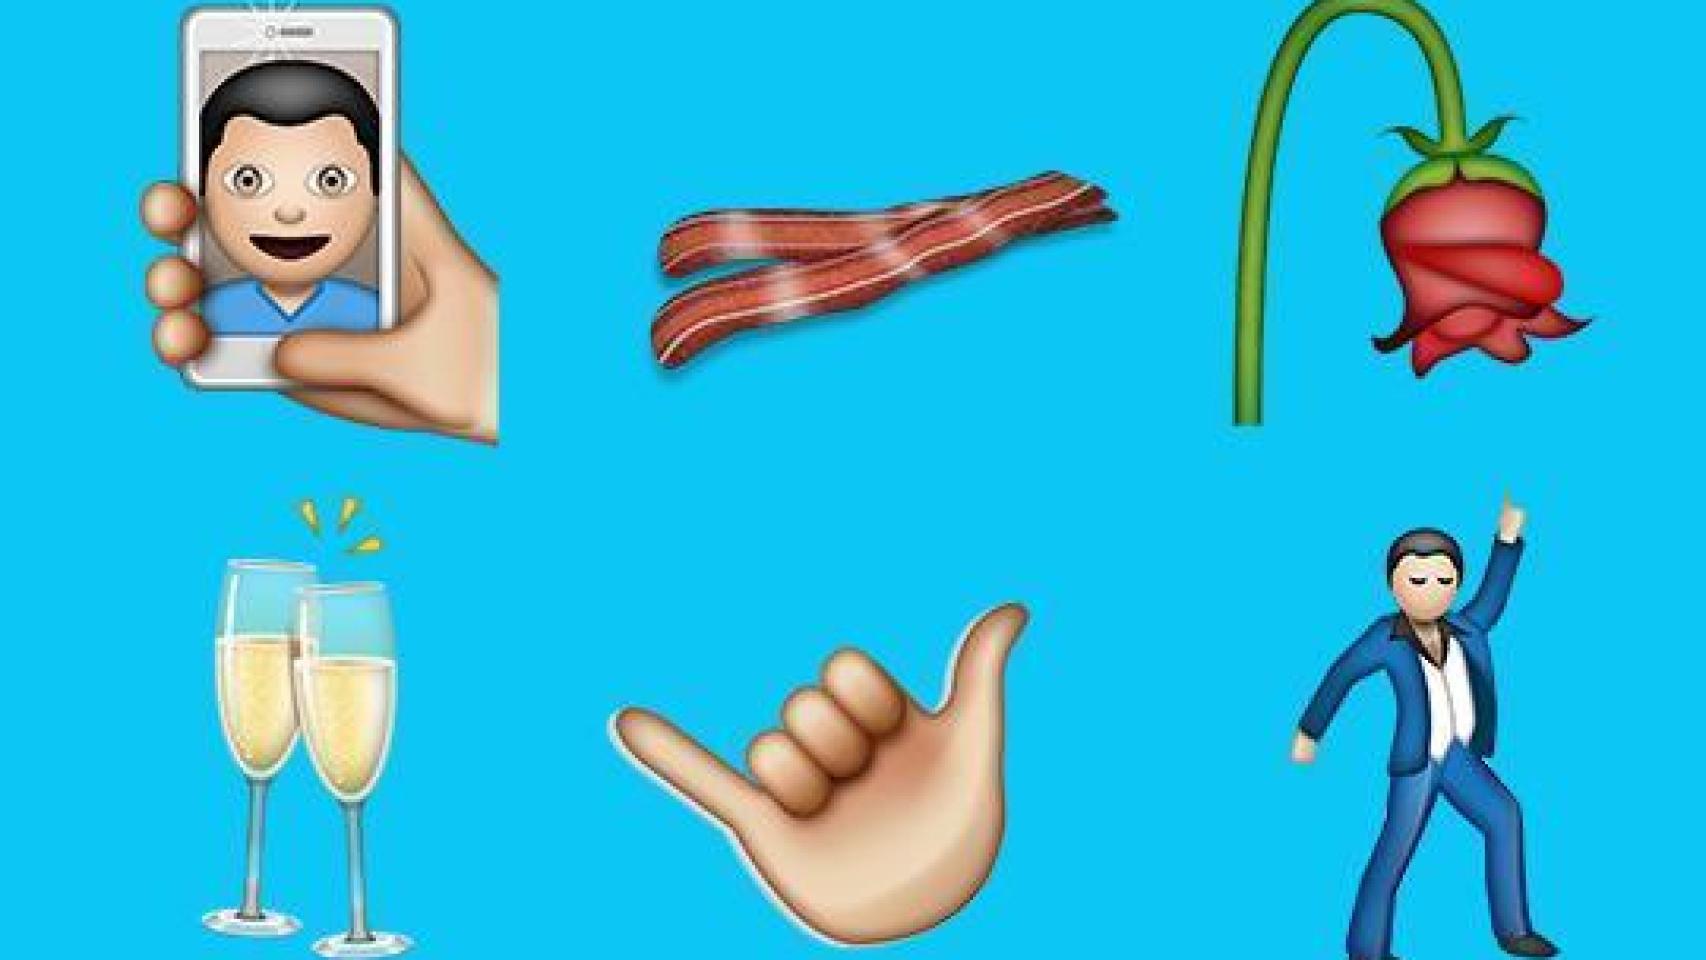 Bacon, selfie o facepalm… Descubrimos los nuevos emojis oficiales que llegarán el año que viene